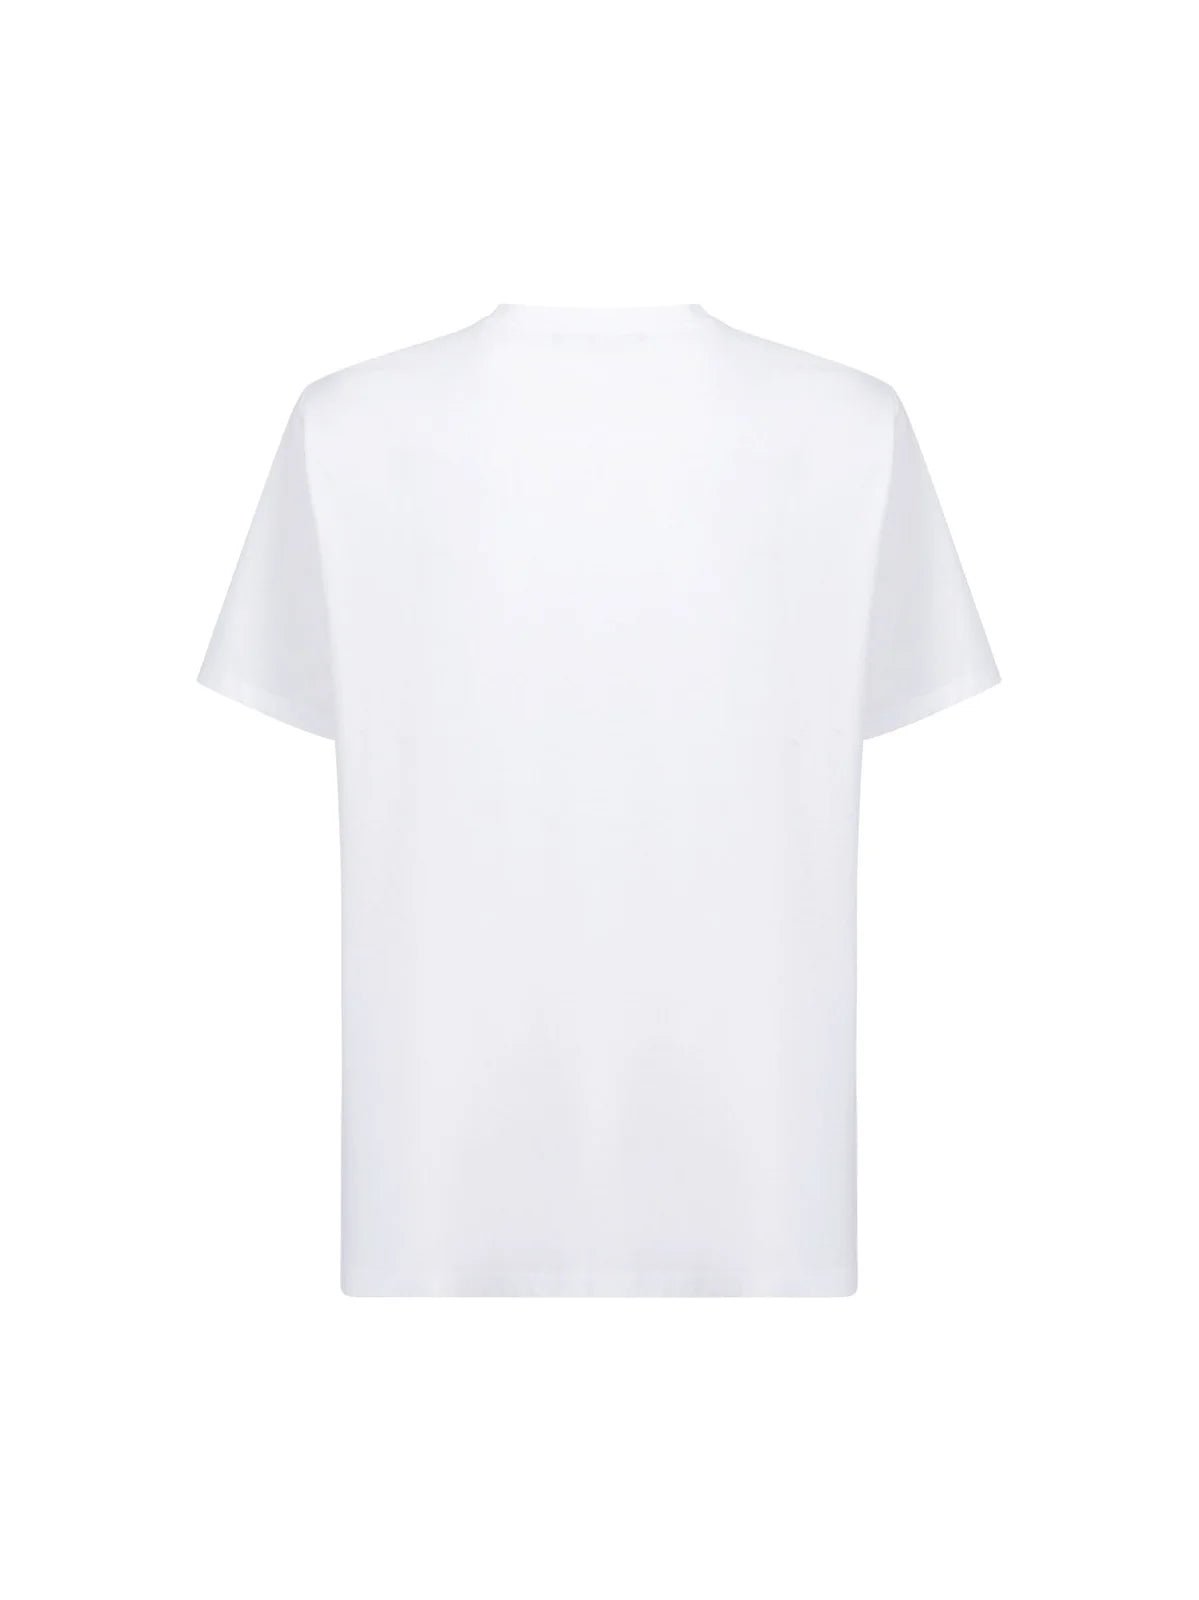 Balmain Paris Logo T-Shirt - GAB White/Black - Escape Menswear